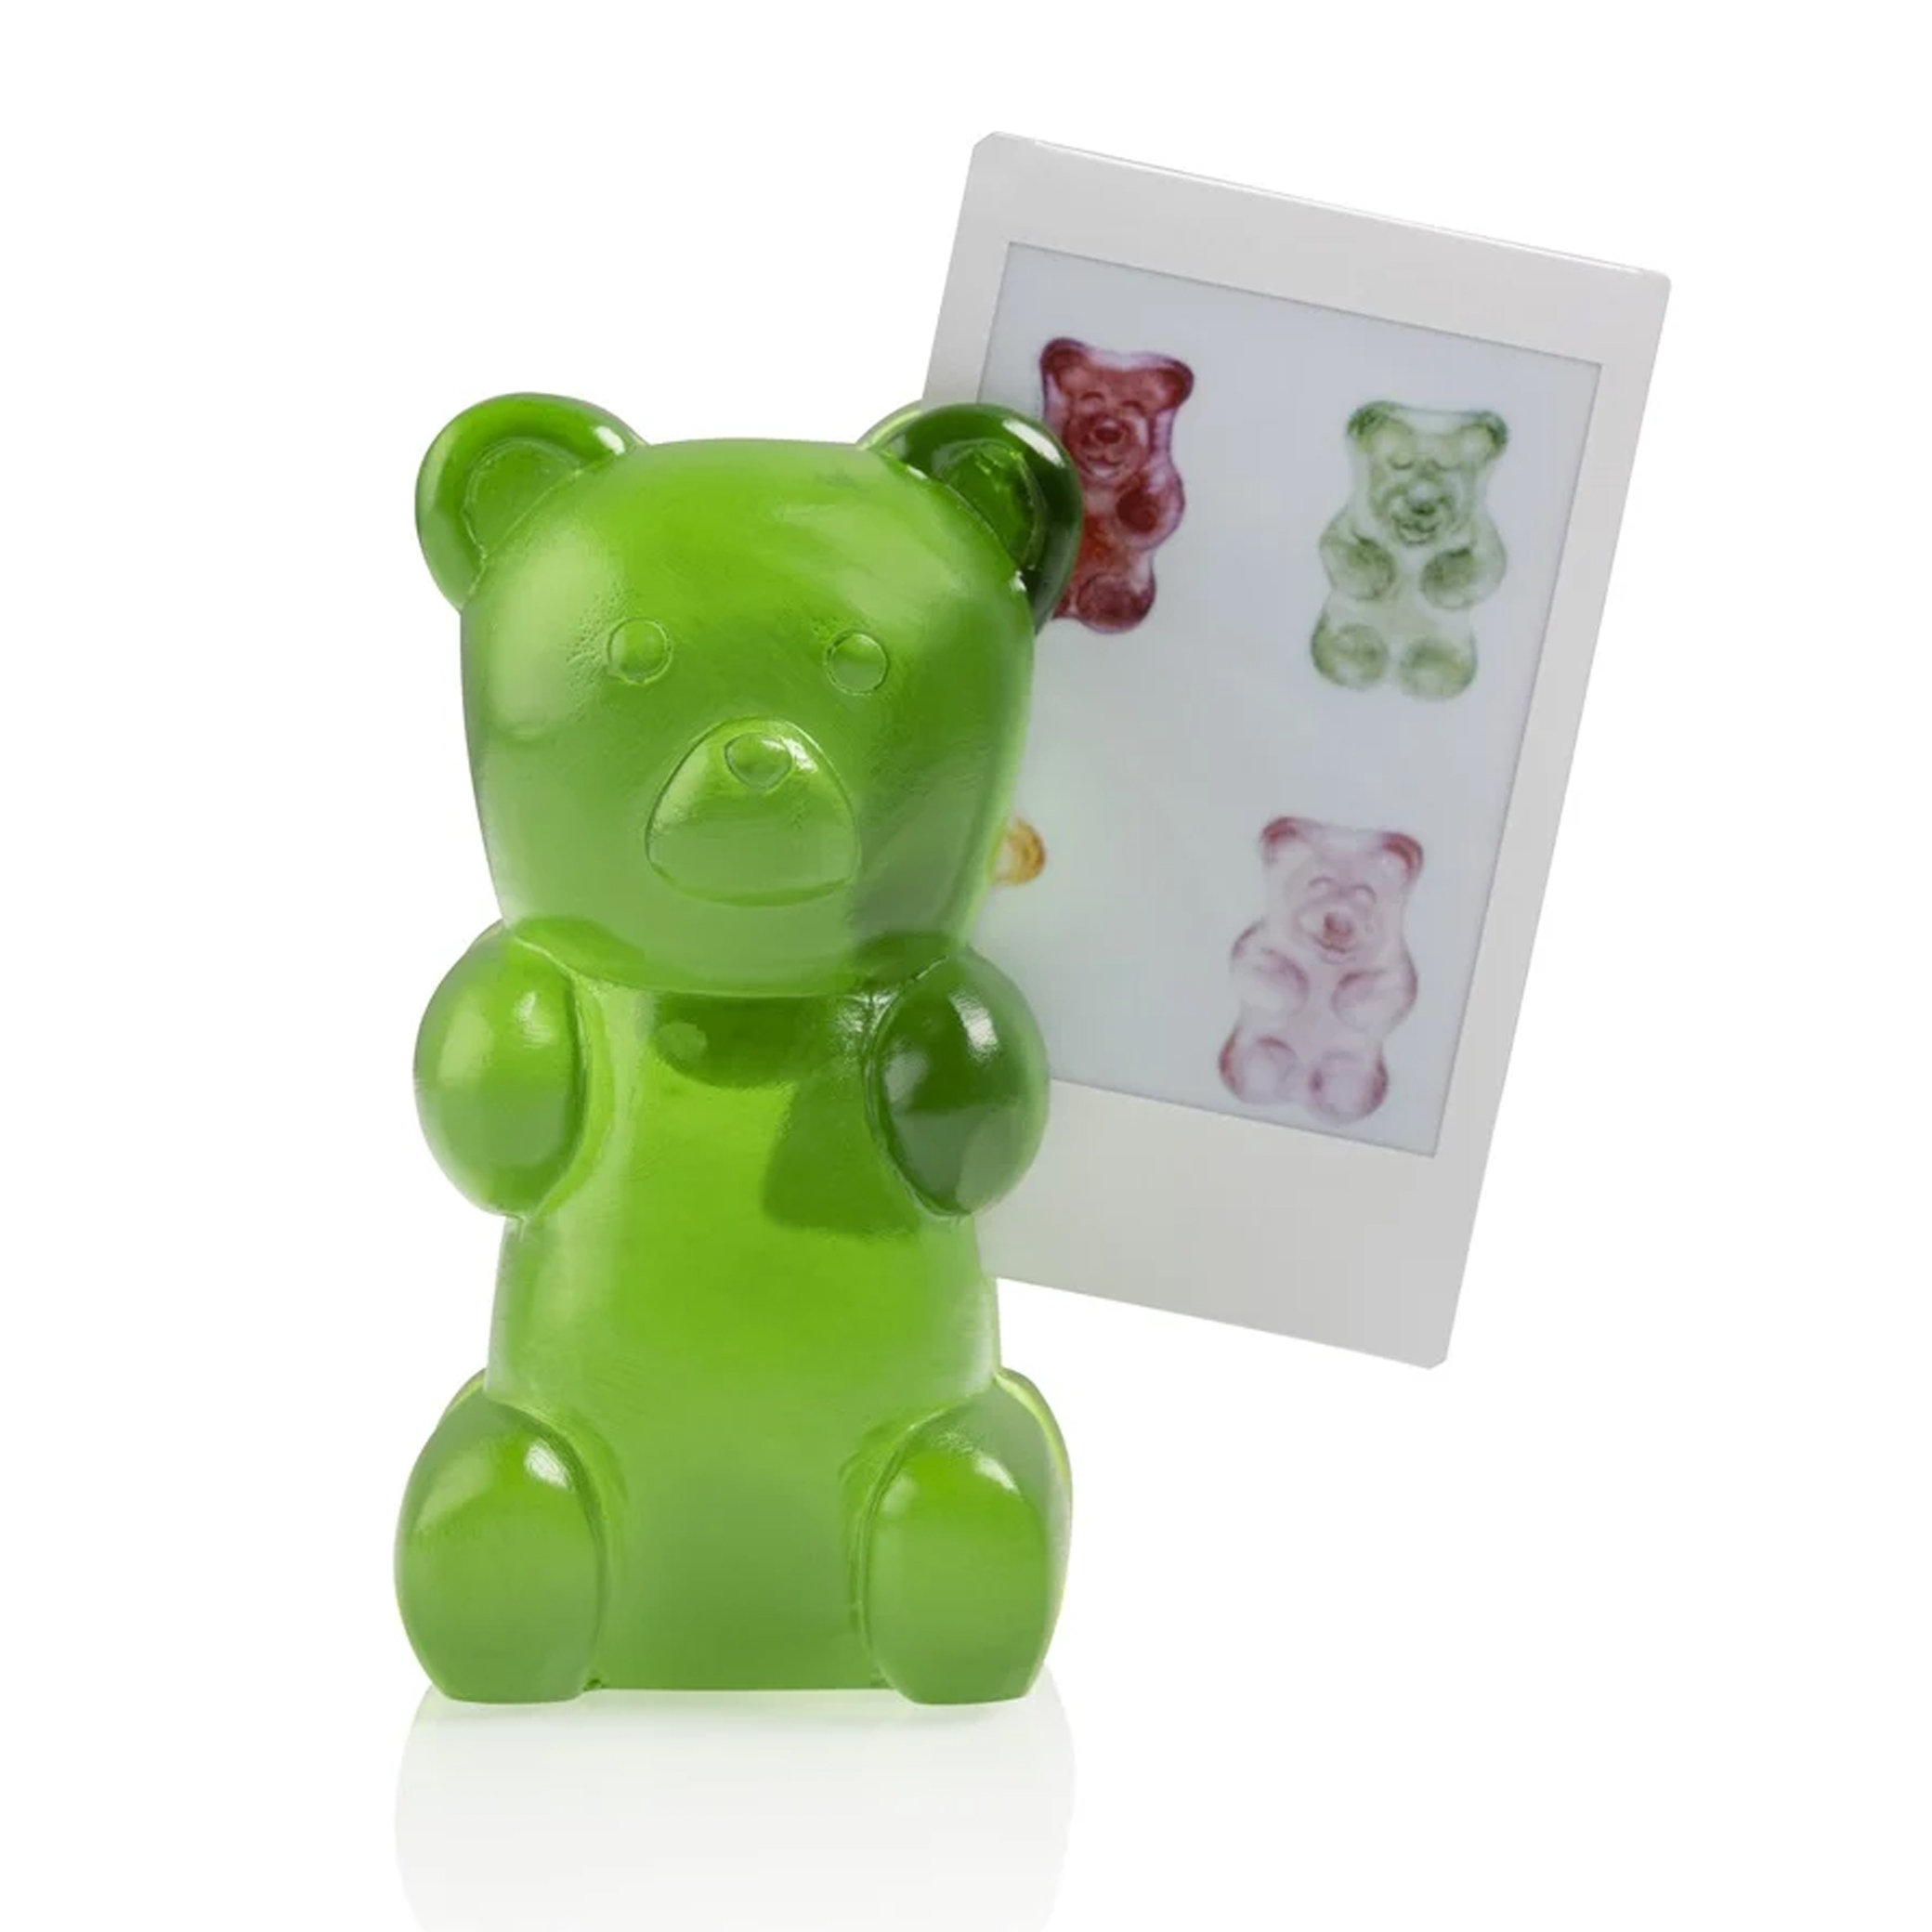 bitten-design-candy-bear-photo-holder-sweetie-green